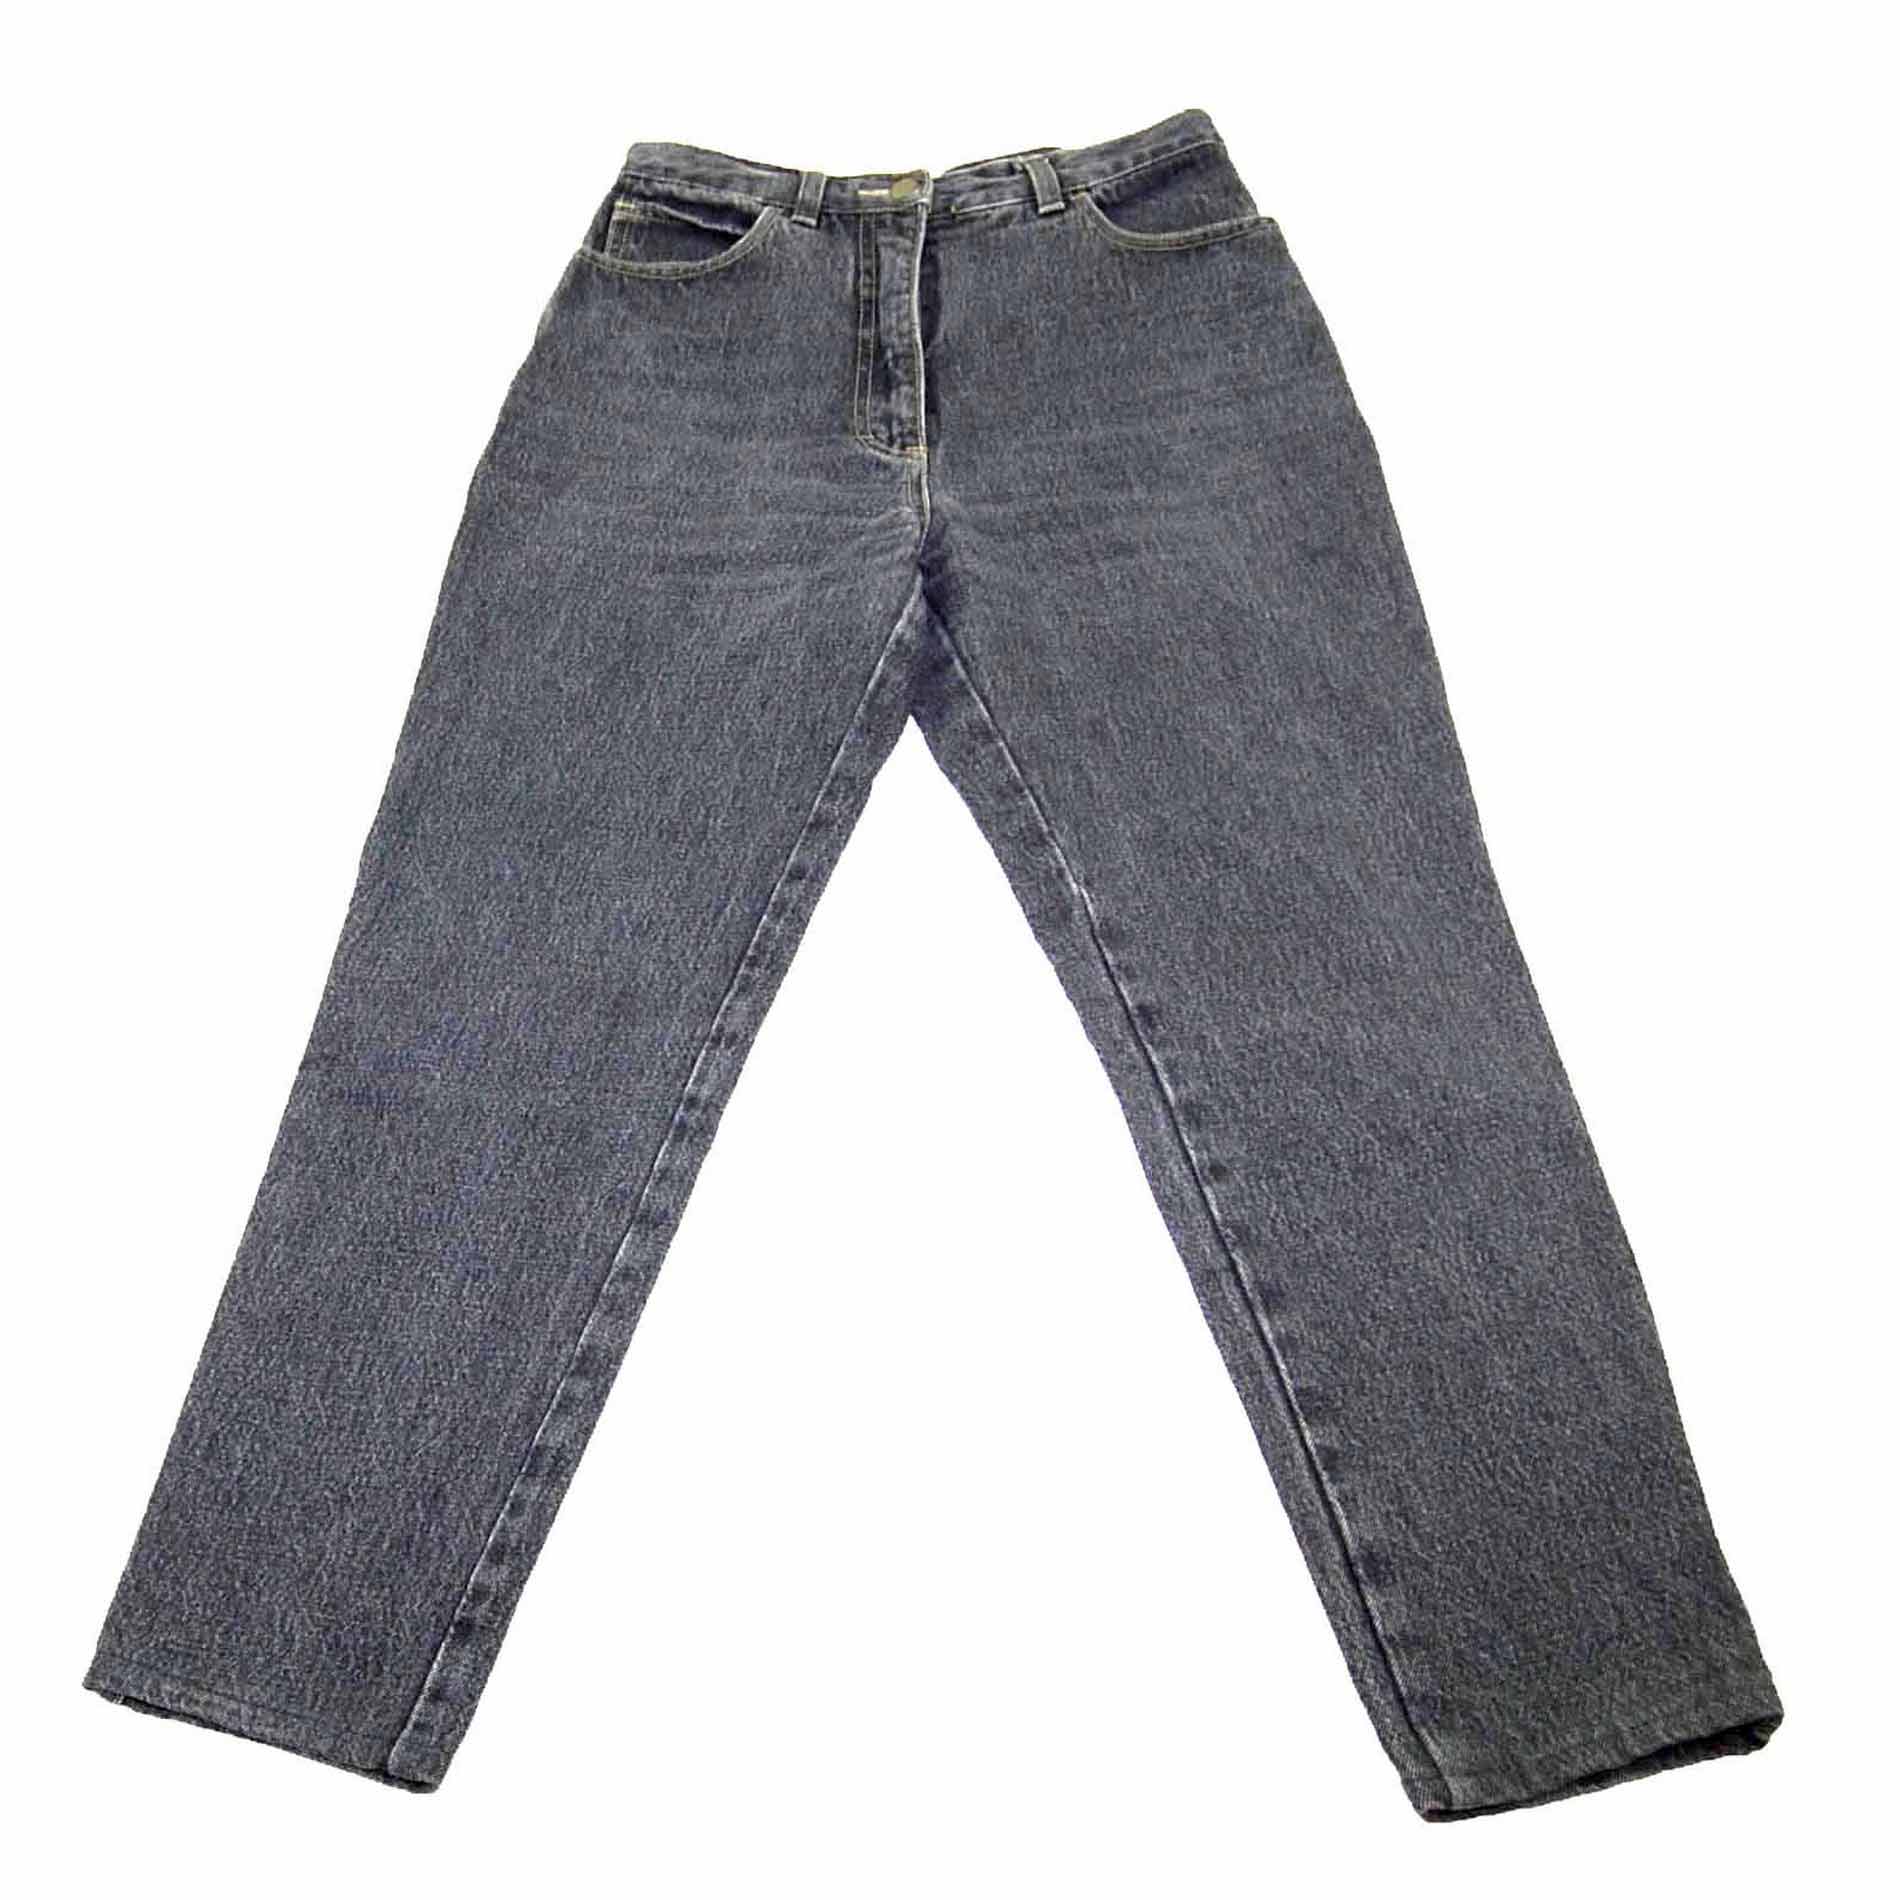 90s Black Denim Vintage Mom Jeans - Blue 17 Vintage Clothing